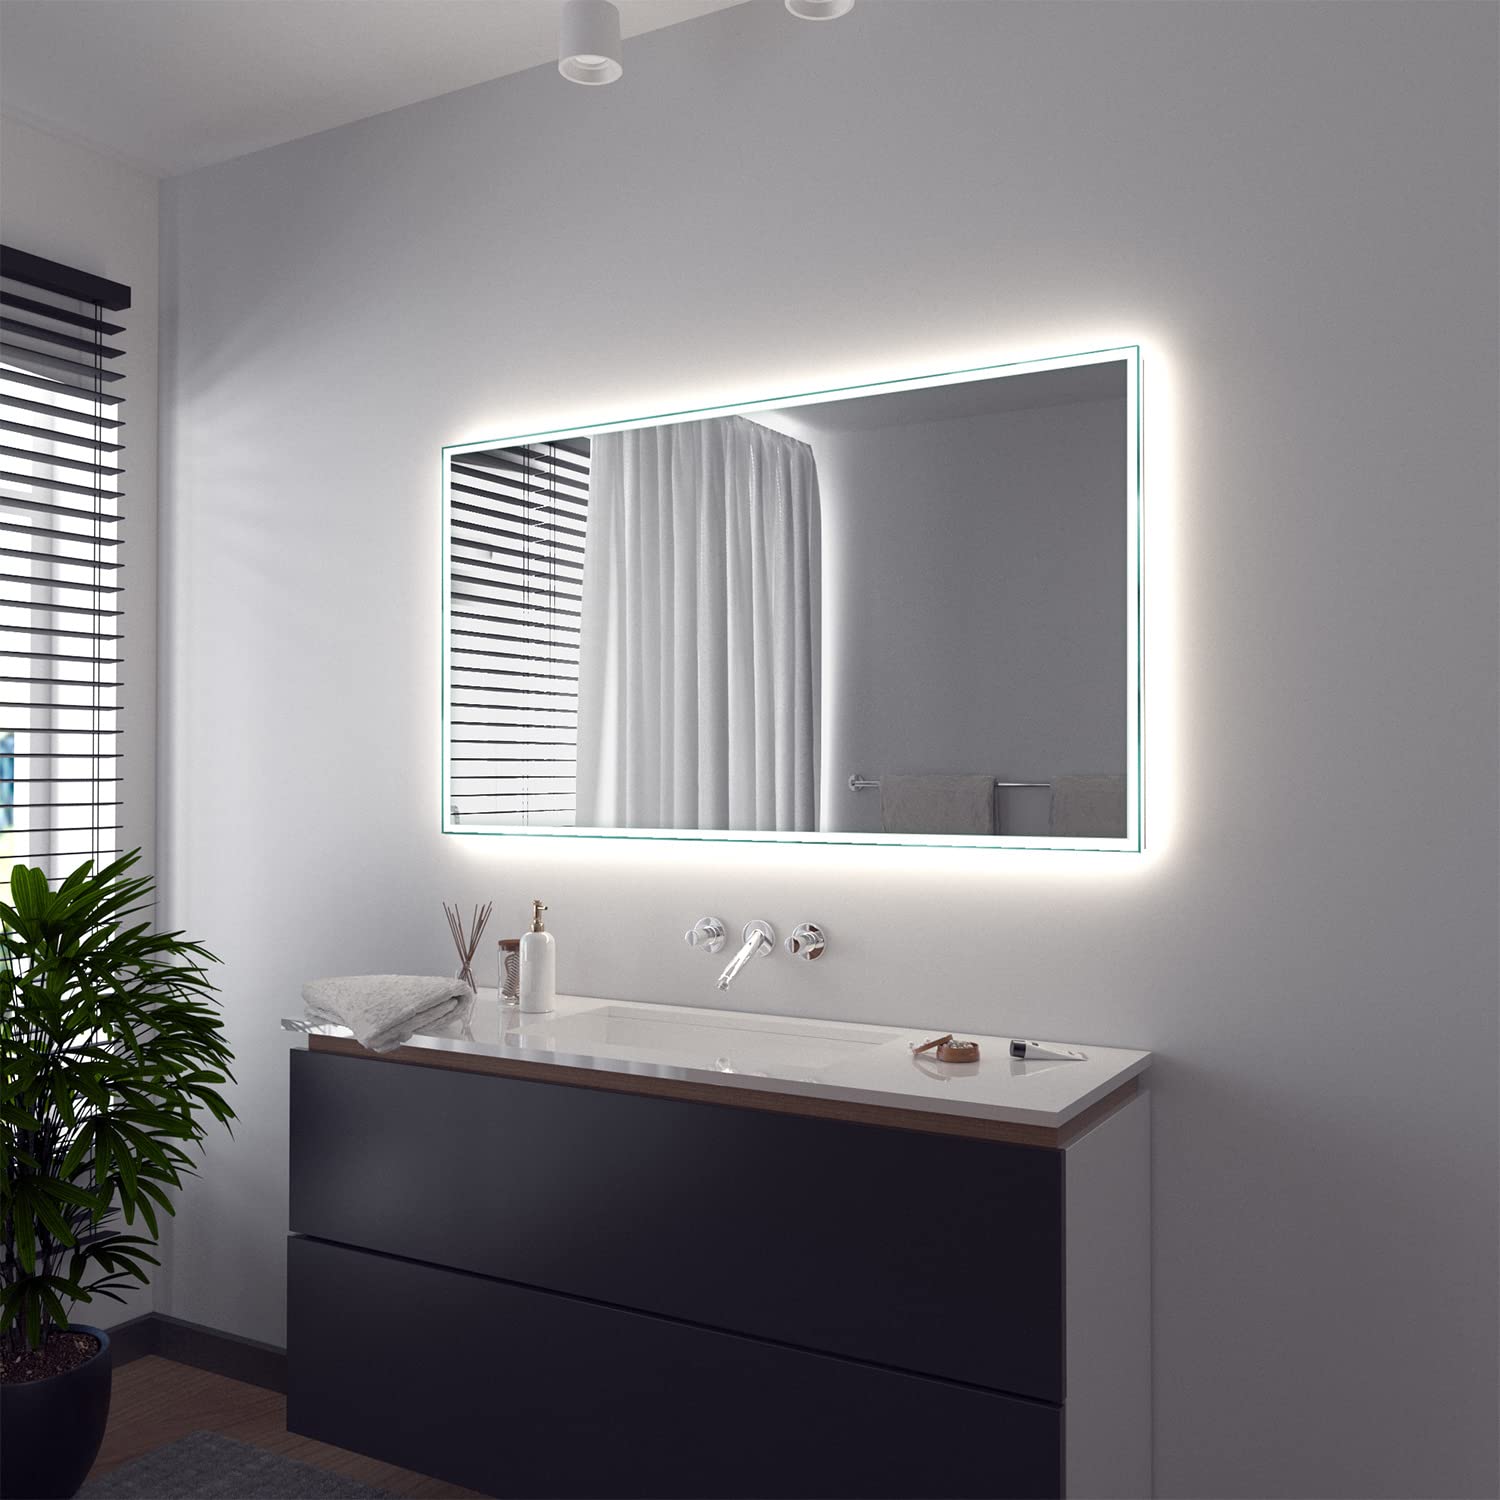 SARAR Wandspiegel mit rundum LED-Beleuchtung 160x70 cm Made in Germany Vittoria eckiger Badspiegel Spiegel mit Beleuchtung Badezimmerspiegel